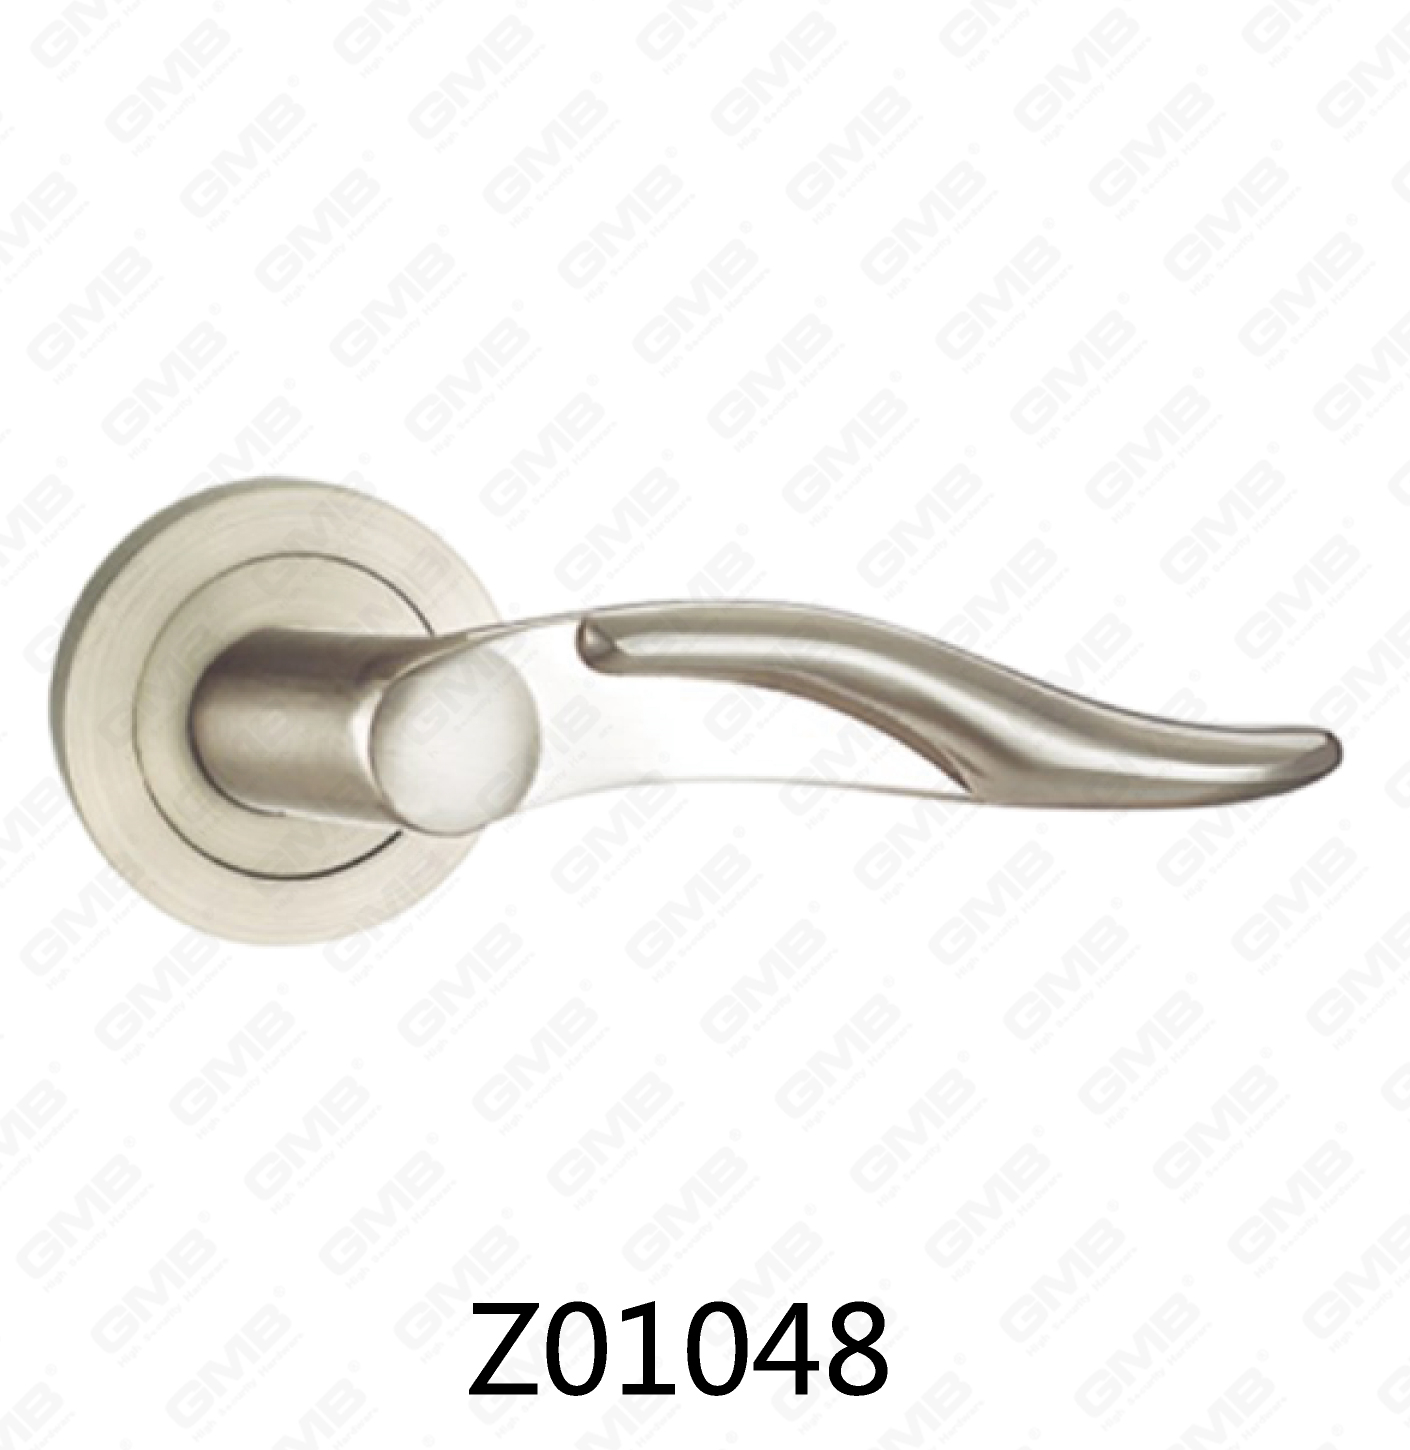 Asa de puerta de roseta de aluminio de aleación de zinc Zamak con roseta redonda (Z01048)